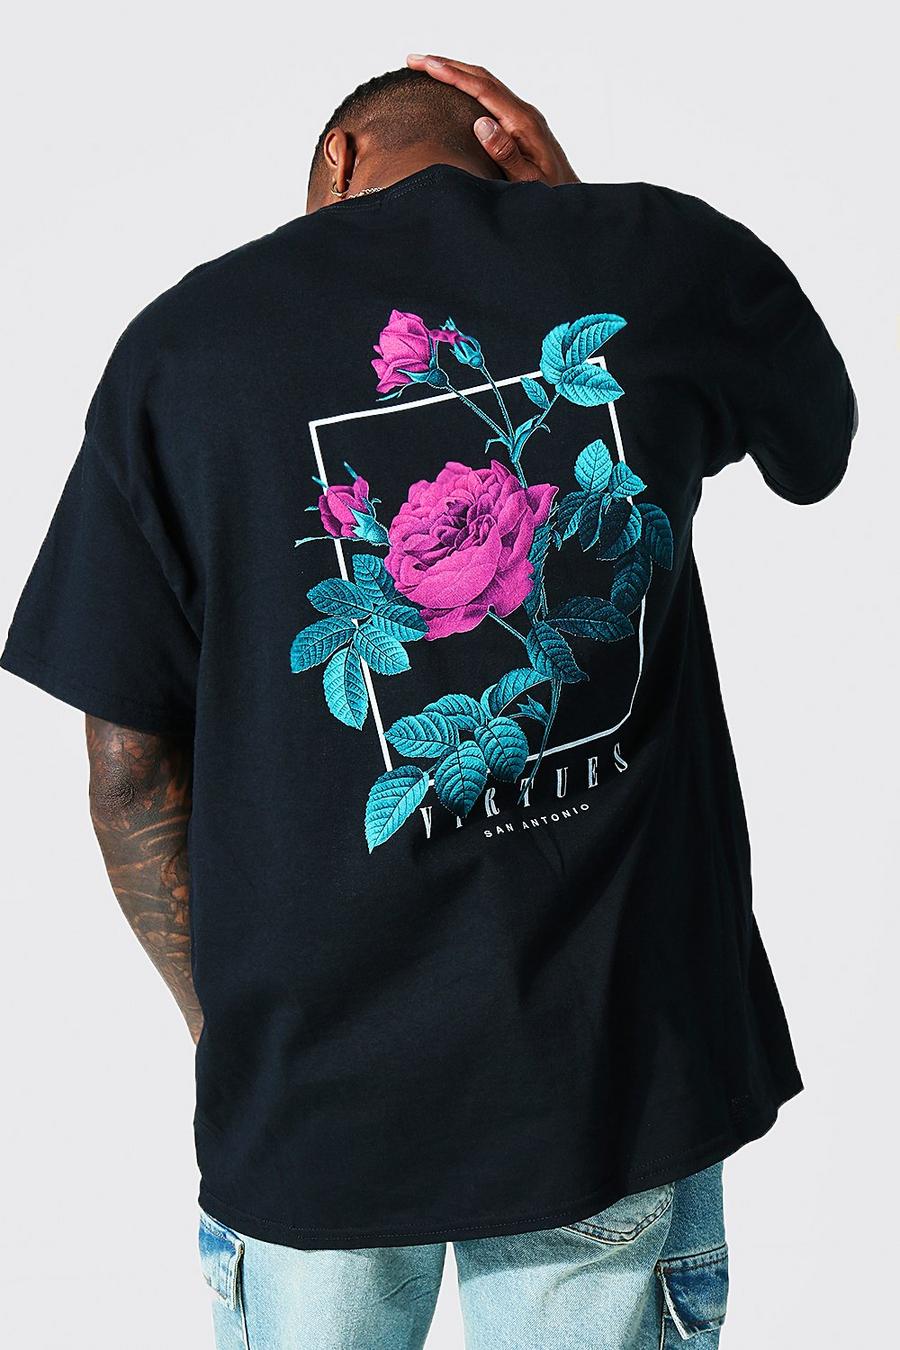 T-shirt oversize con grafica Virtues, Black nero